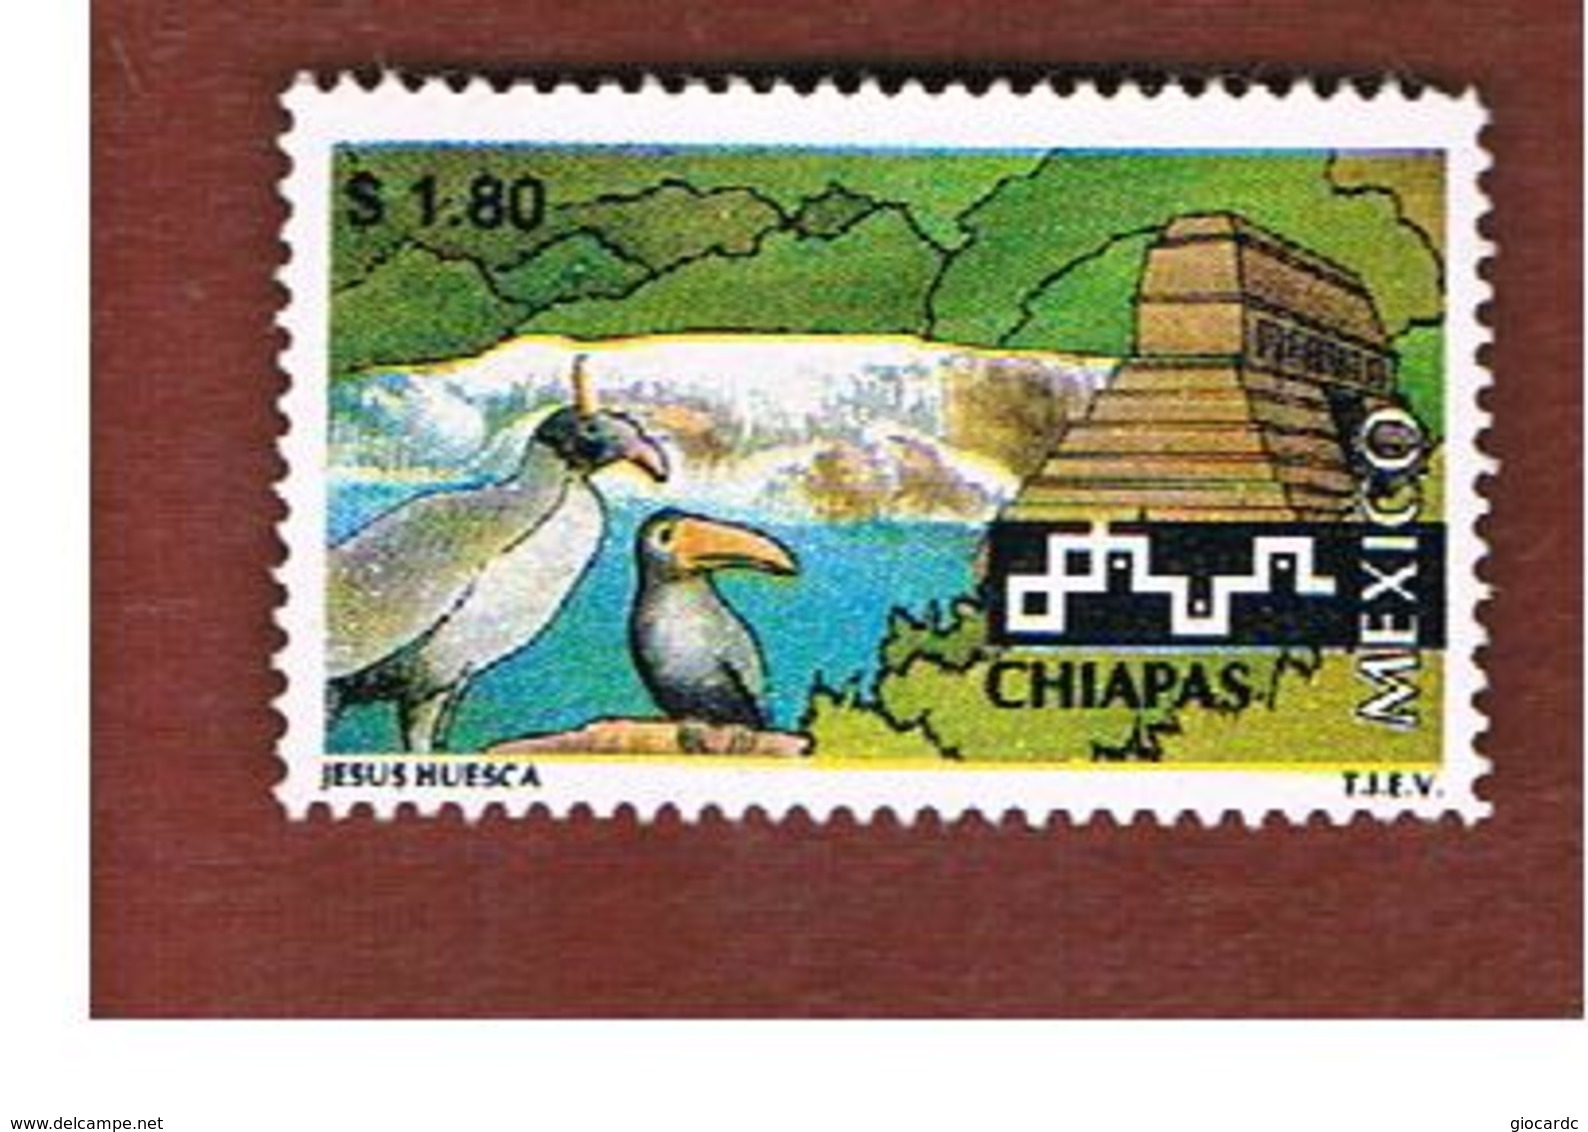 MESSICO (MEXICO) -  SG 2411  - 1997  TOURISM: CHIAPAS                         -  USED° - Messico